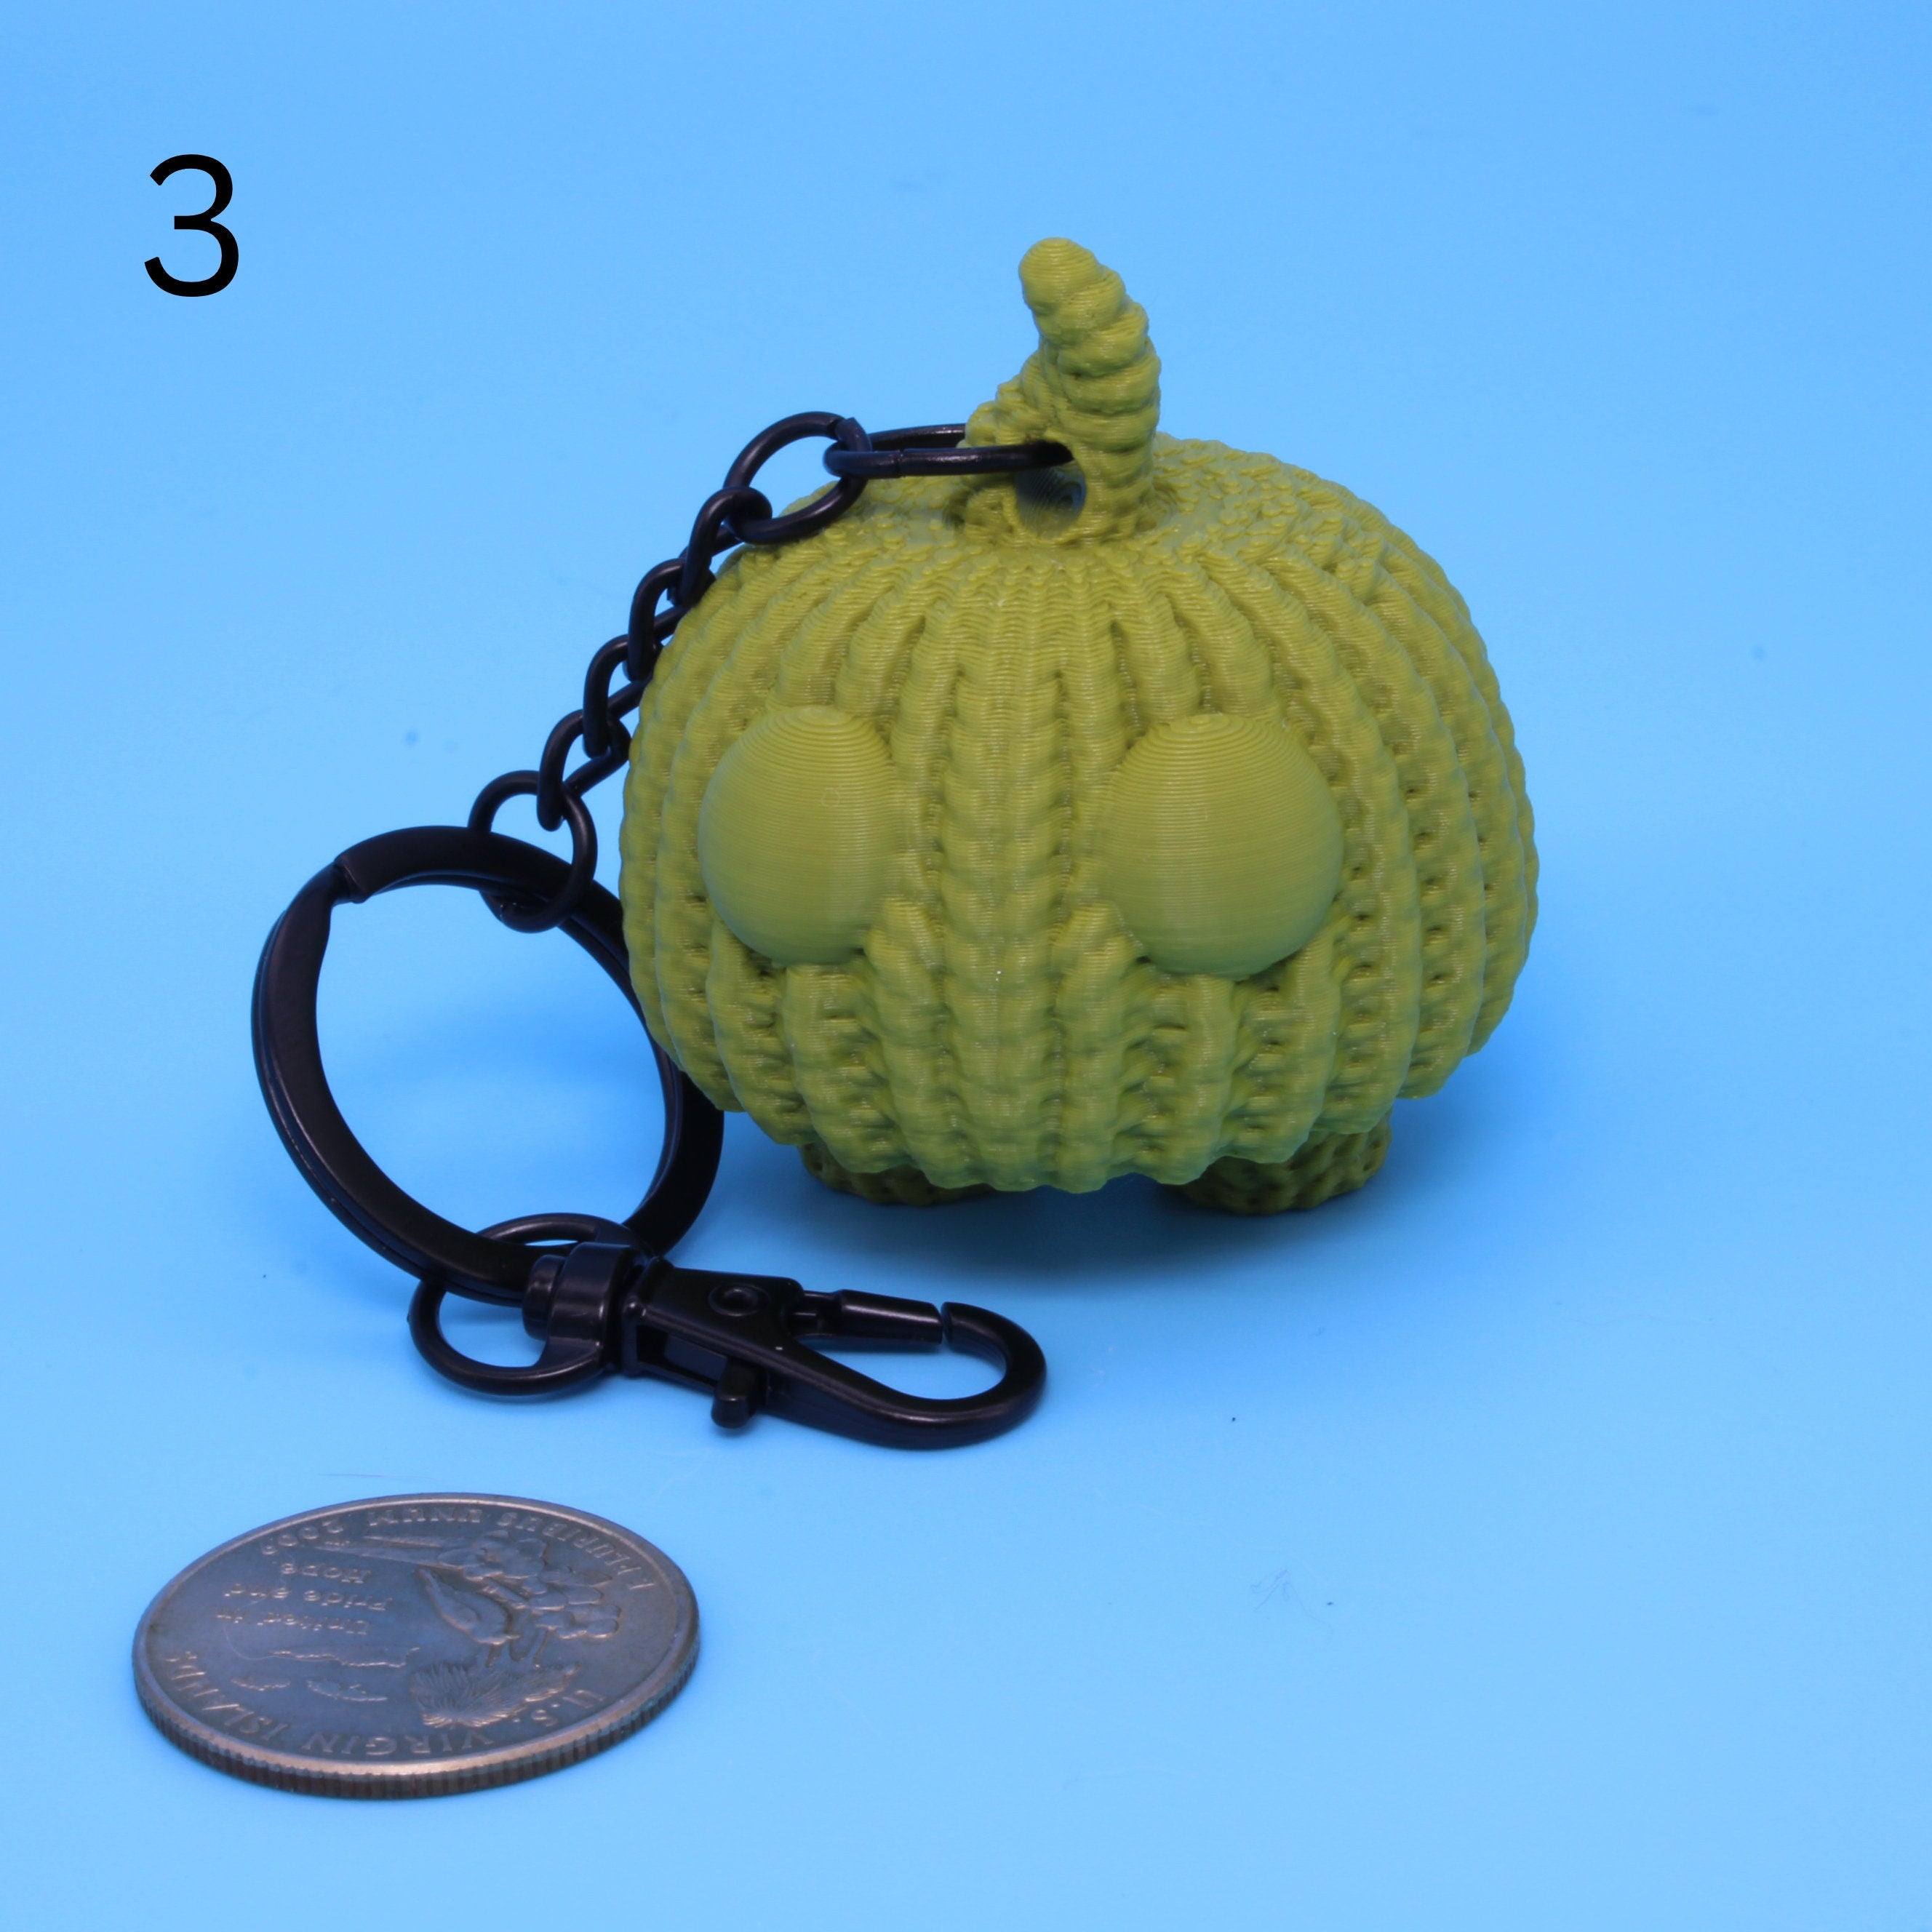 Crochet Pumpkins